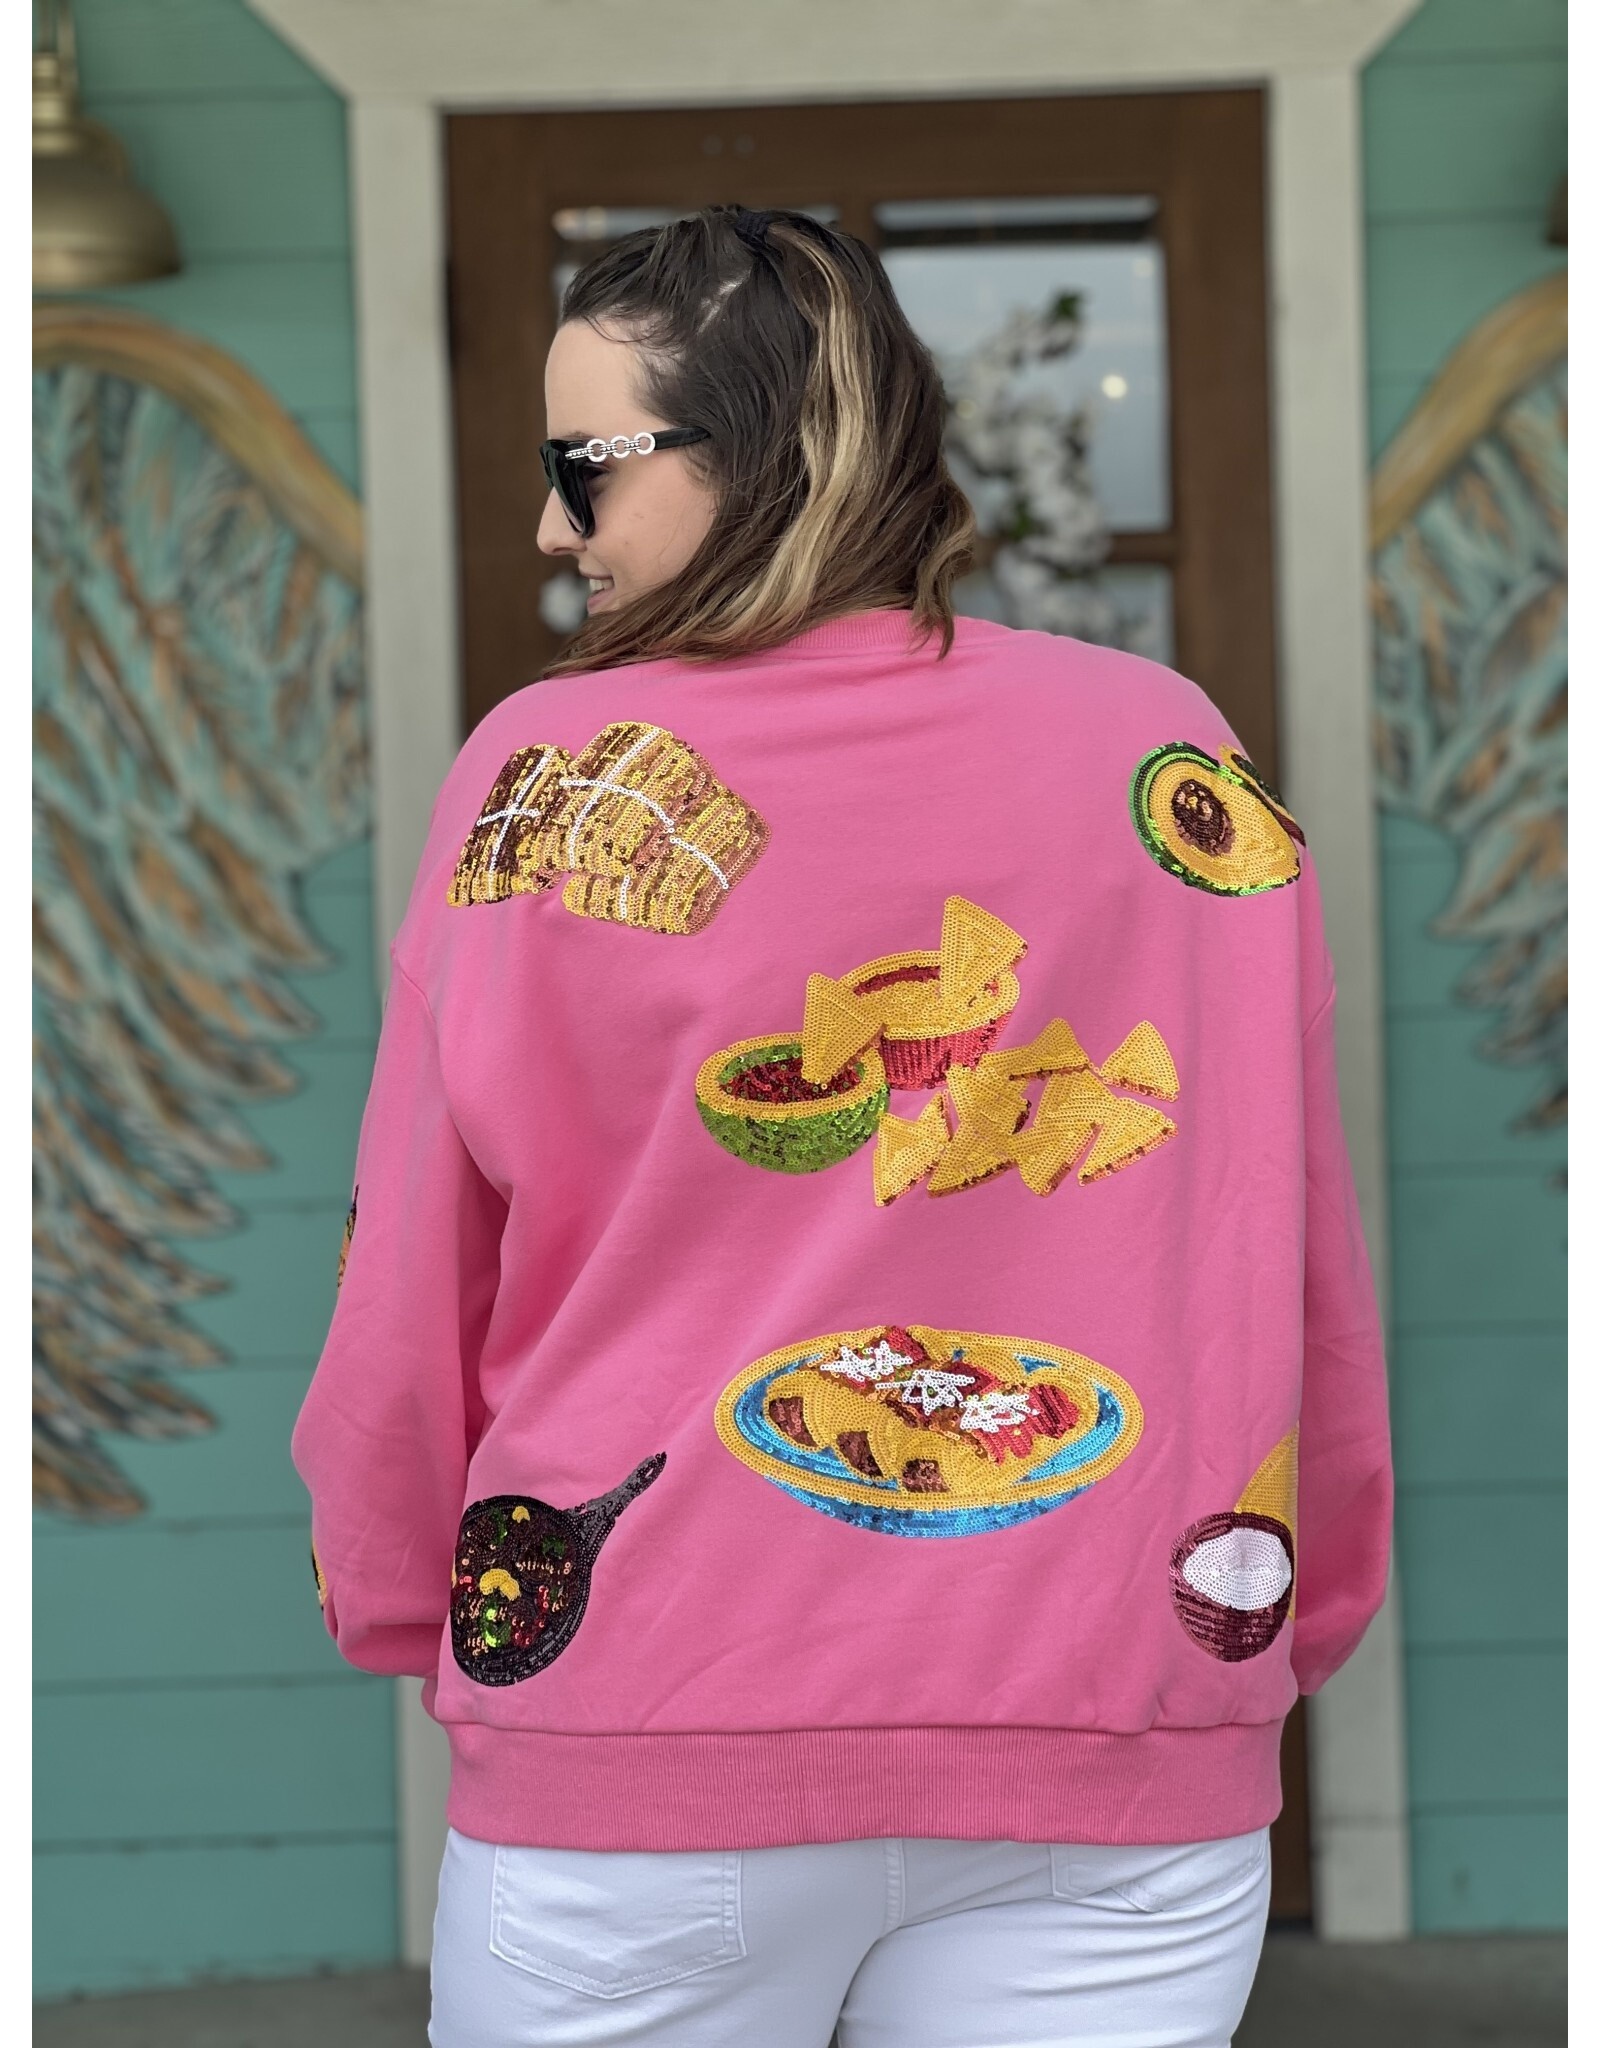 Queen of Sparkles Mexican Food Sweatshirt